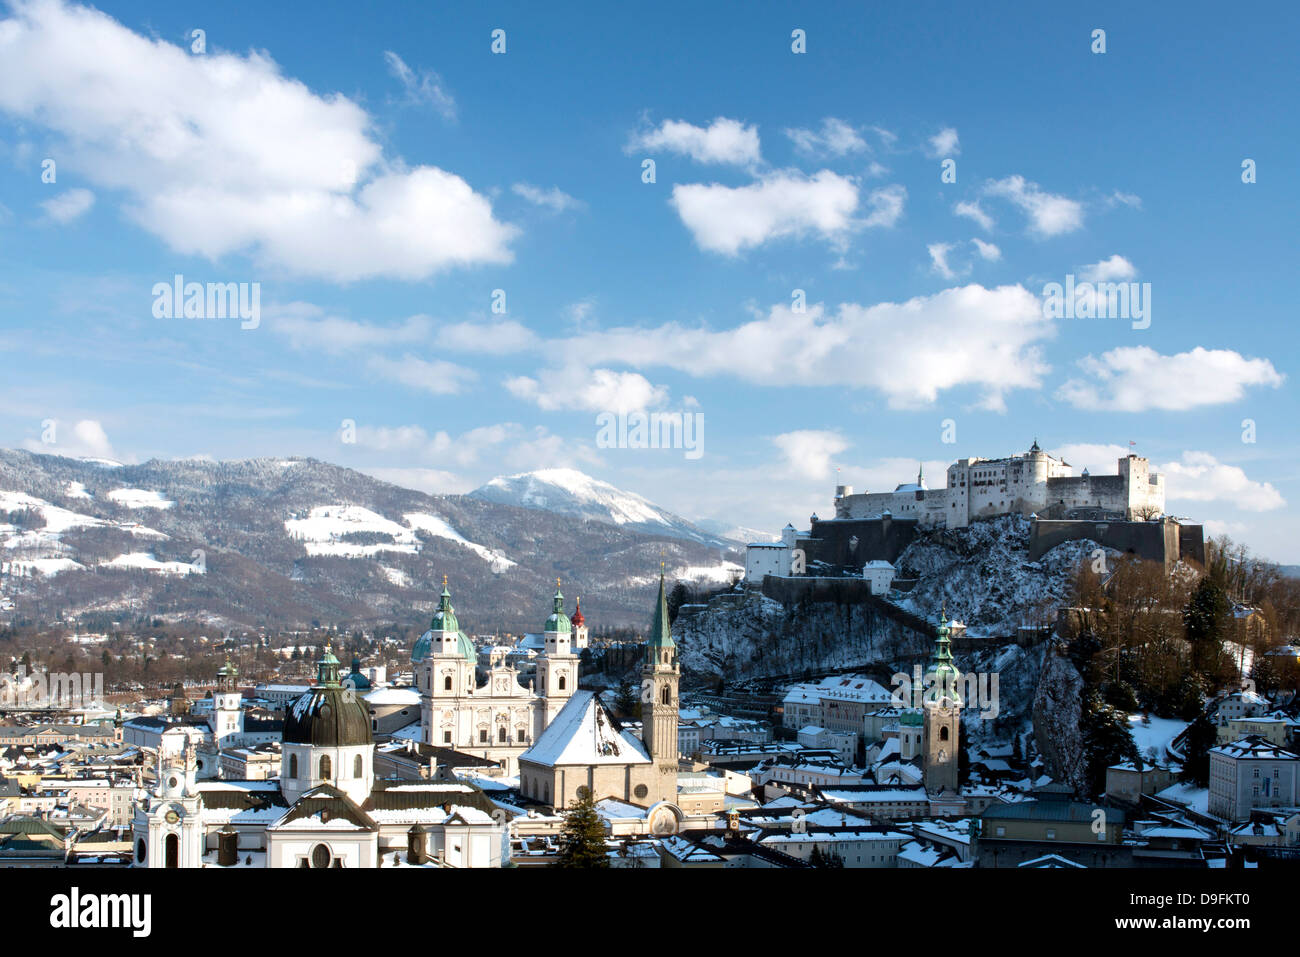 El Altstadt skyline incluyendo la catedral de Salzburgo, Franziskaner Kirche y detrás de la Fortaleza de Hohensalzburg, Salzburgo, Austria Foto de stock